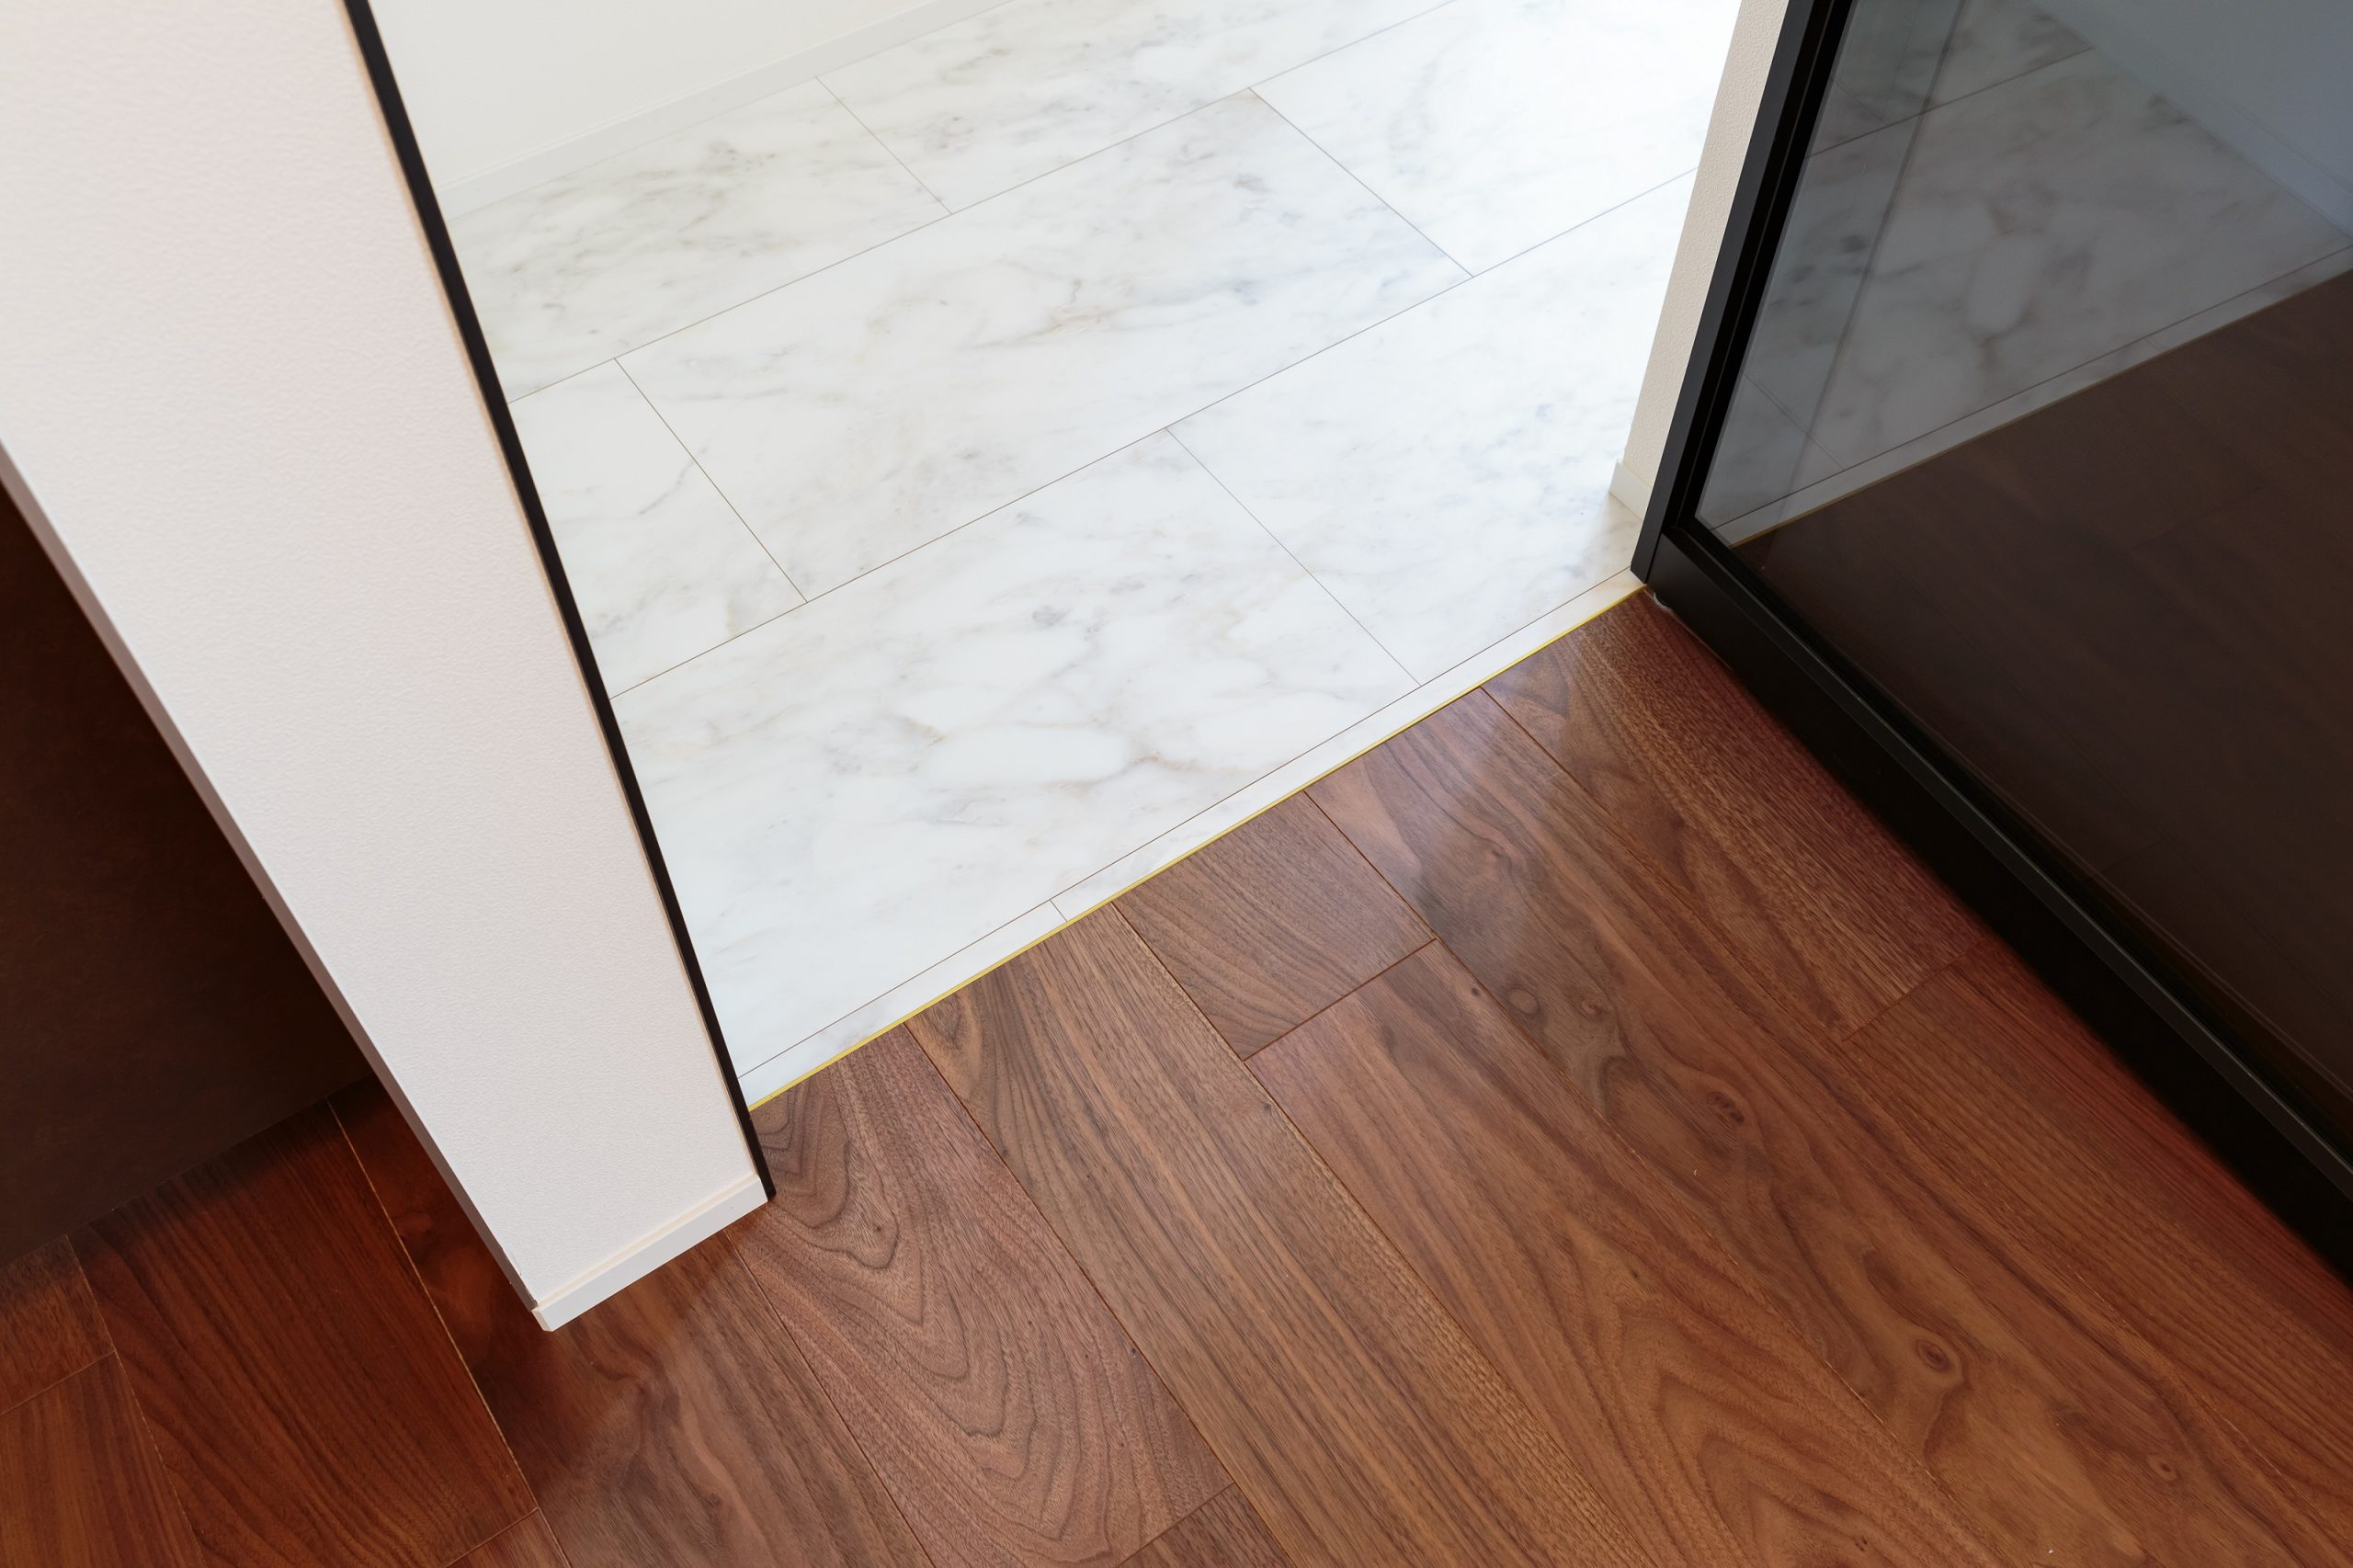 LDKは木目が美しく足ざわりのいいフローリング、水回りは掃除がしやすいフロアタイルと、用途で床材を使い分けることも暮らし心地を高めるアイデアの一つ。真鍮の見切り材をアクセントに採用しました。